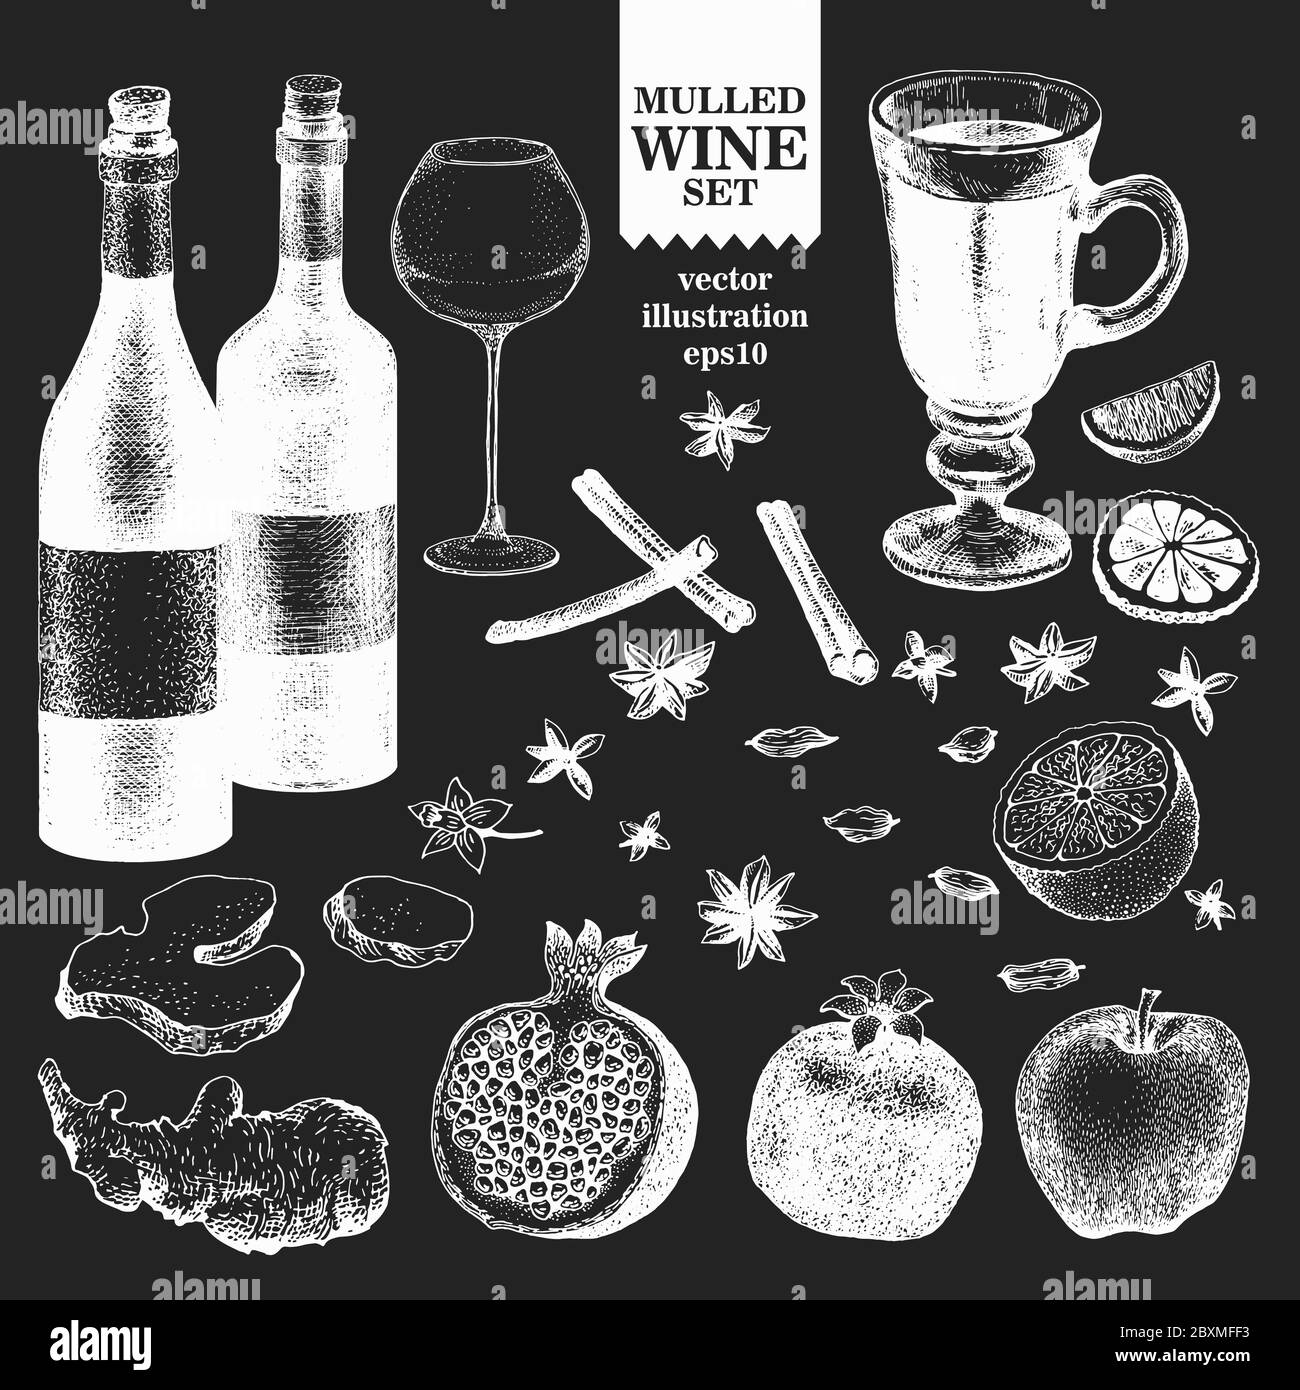 Handgezeichnete Illustrationen zu Glühweininhaltsstoffen. Vektorgrafiken auf Kreidetafel. Vintage-Hintergrund Stock Vektor